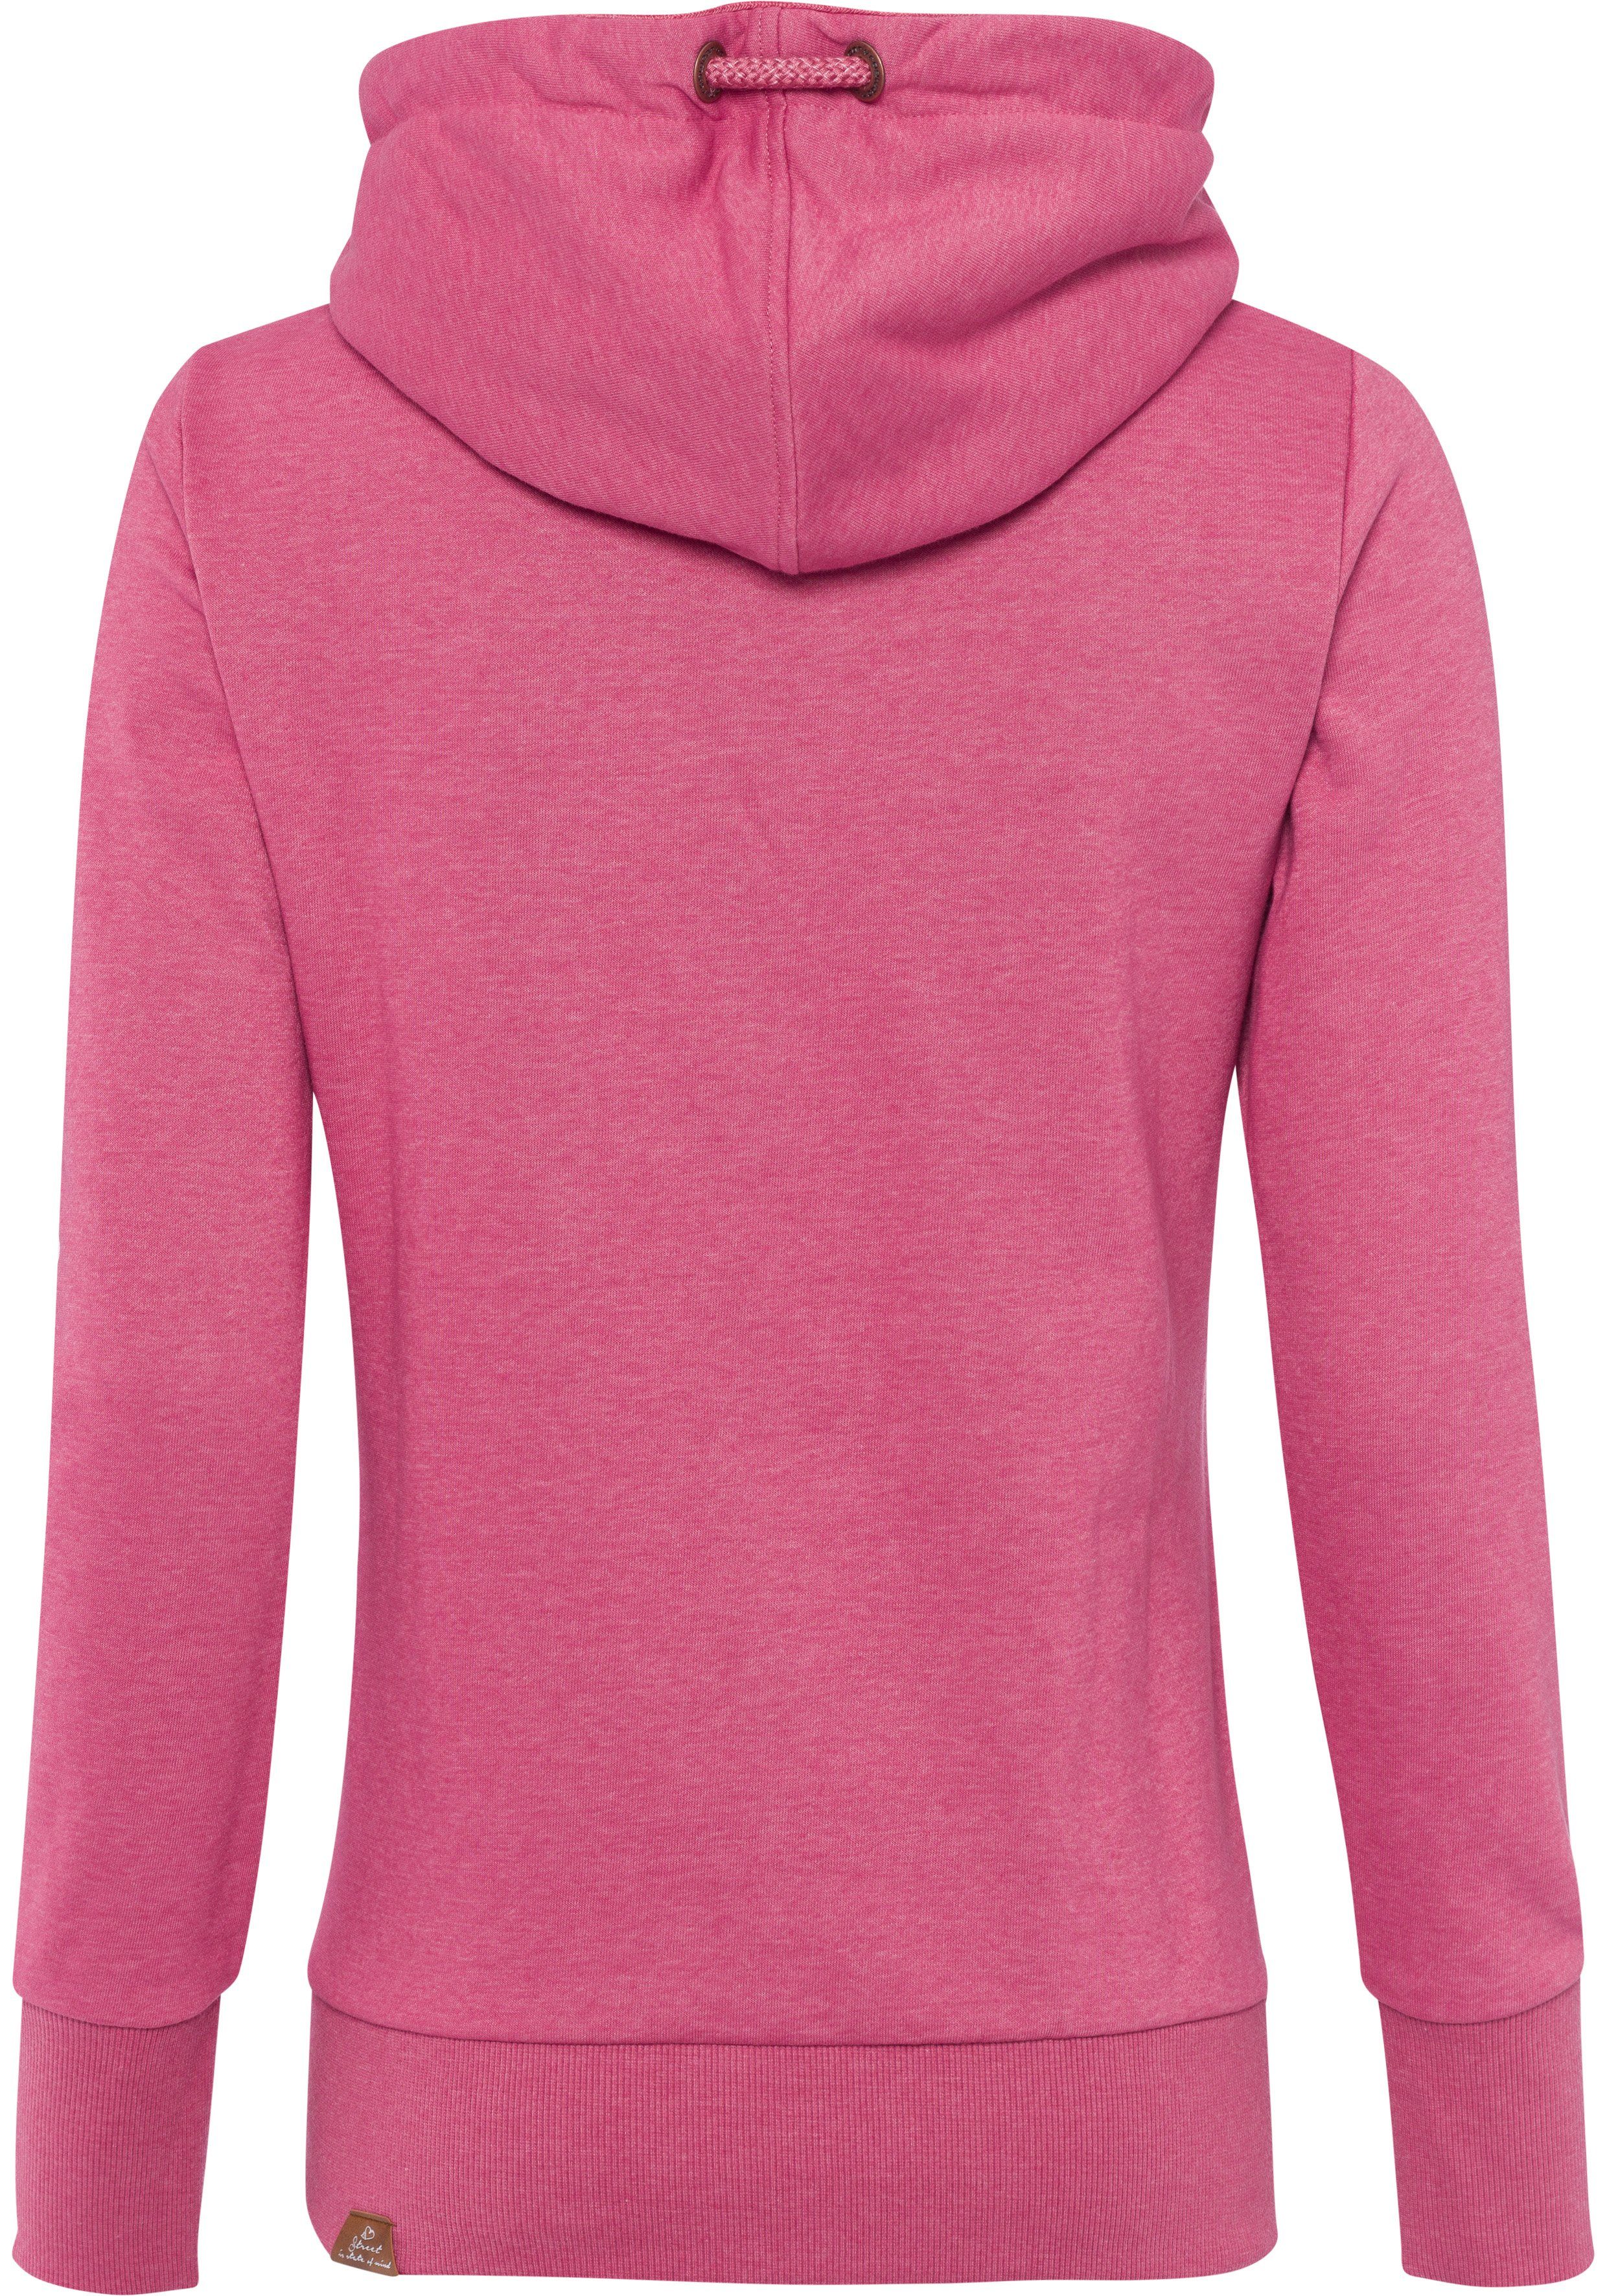 GRIPY mit BOLD asymmetrischem Ragwear Schalkragen rose Sweater 4041